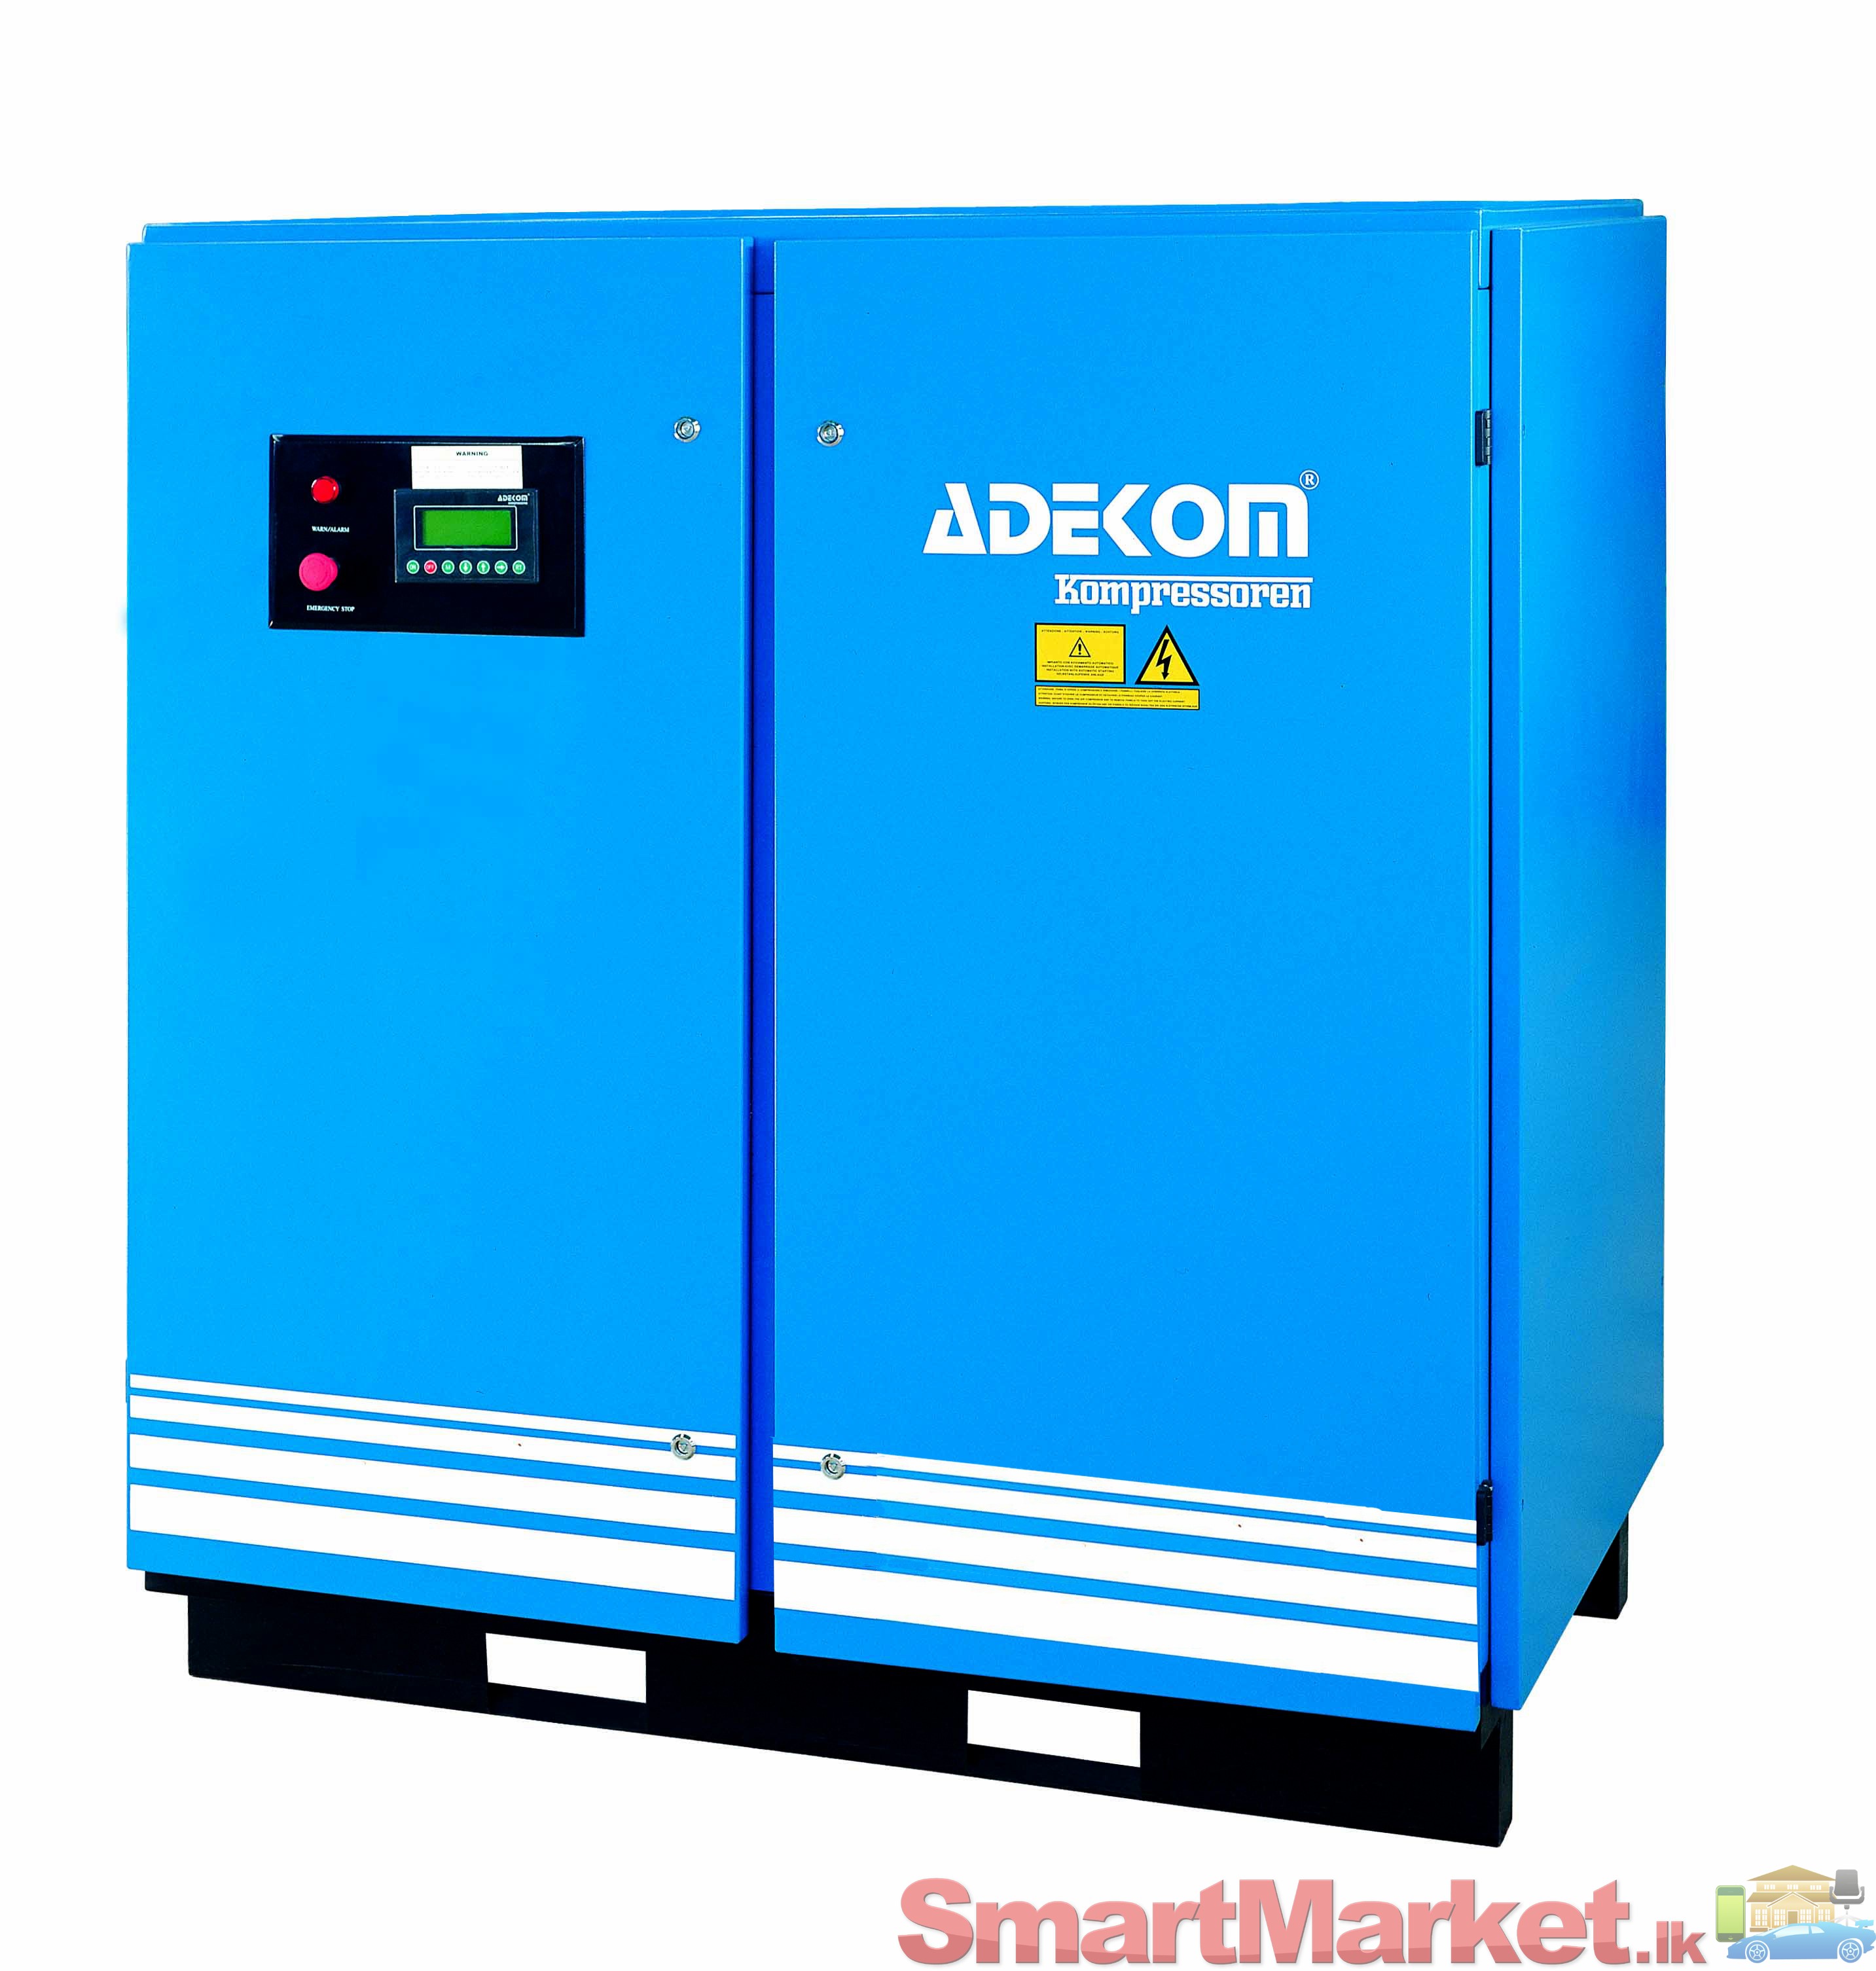 Adekom Air Compressor